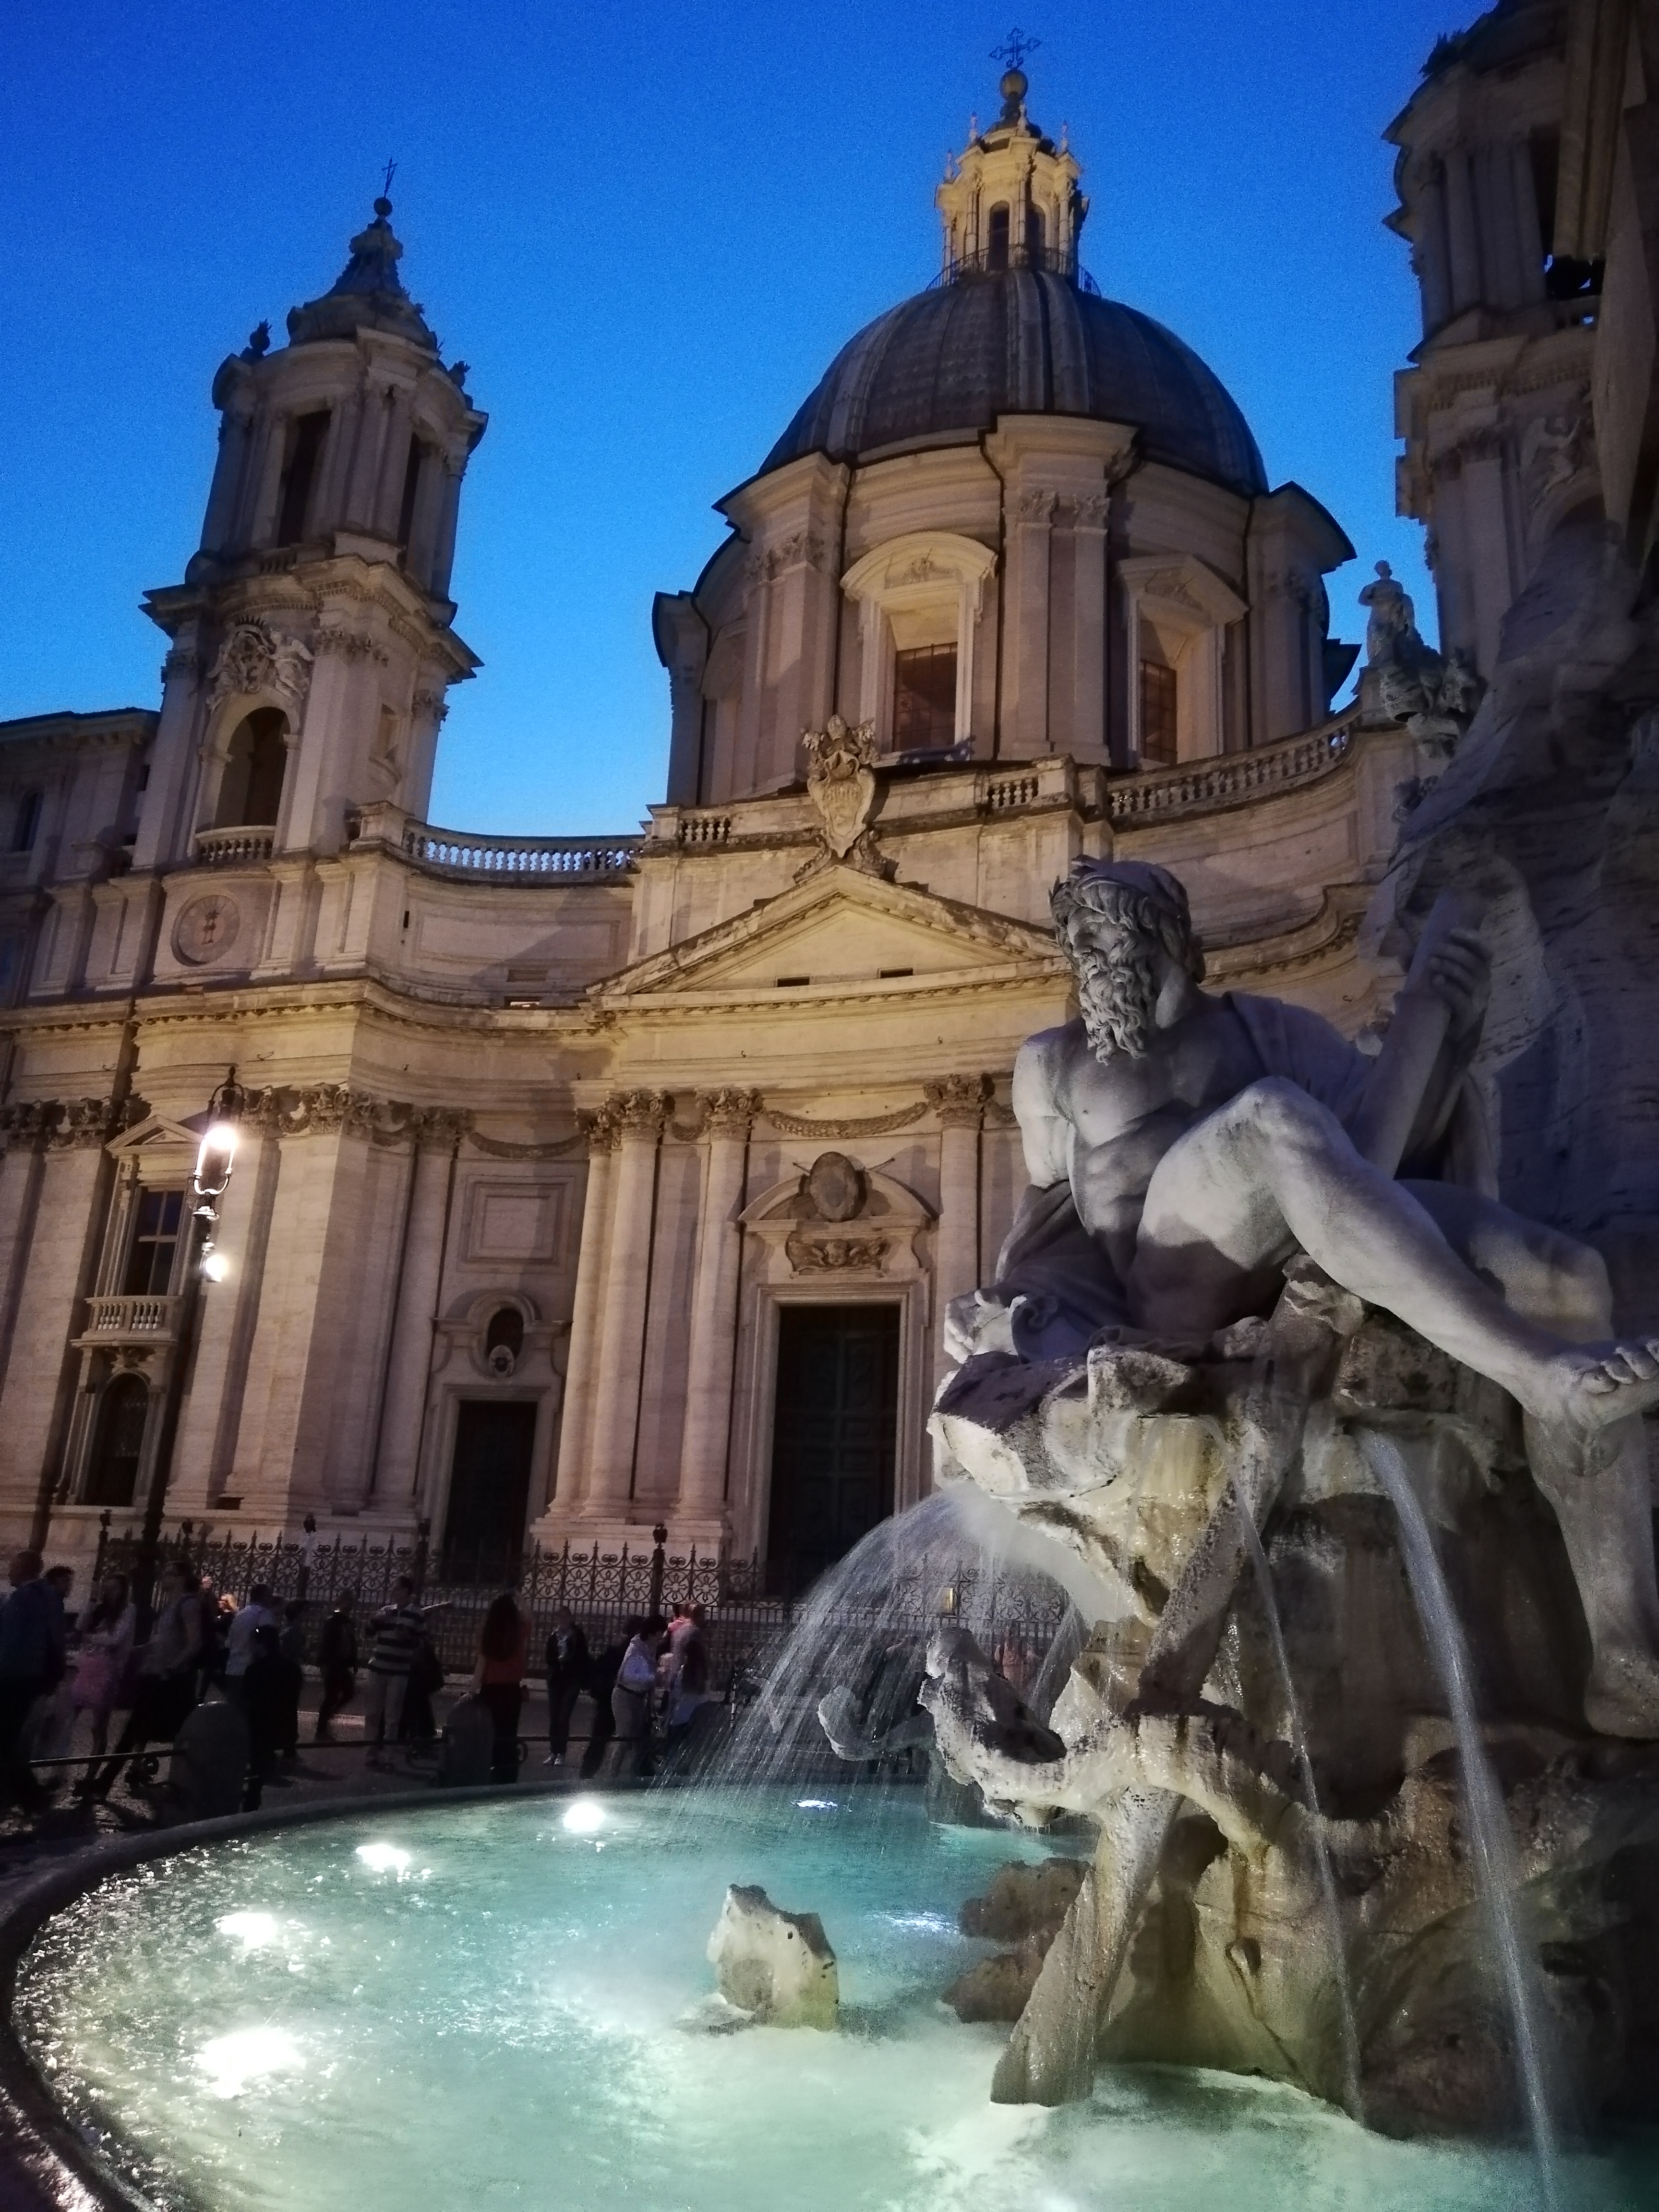 Piazza Navonna Neptune's Fountain